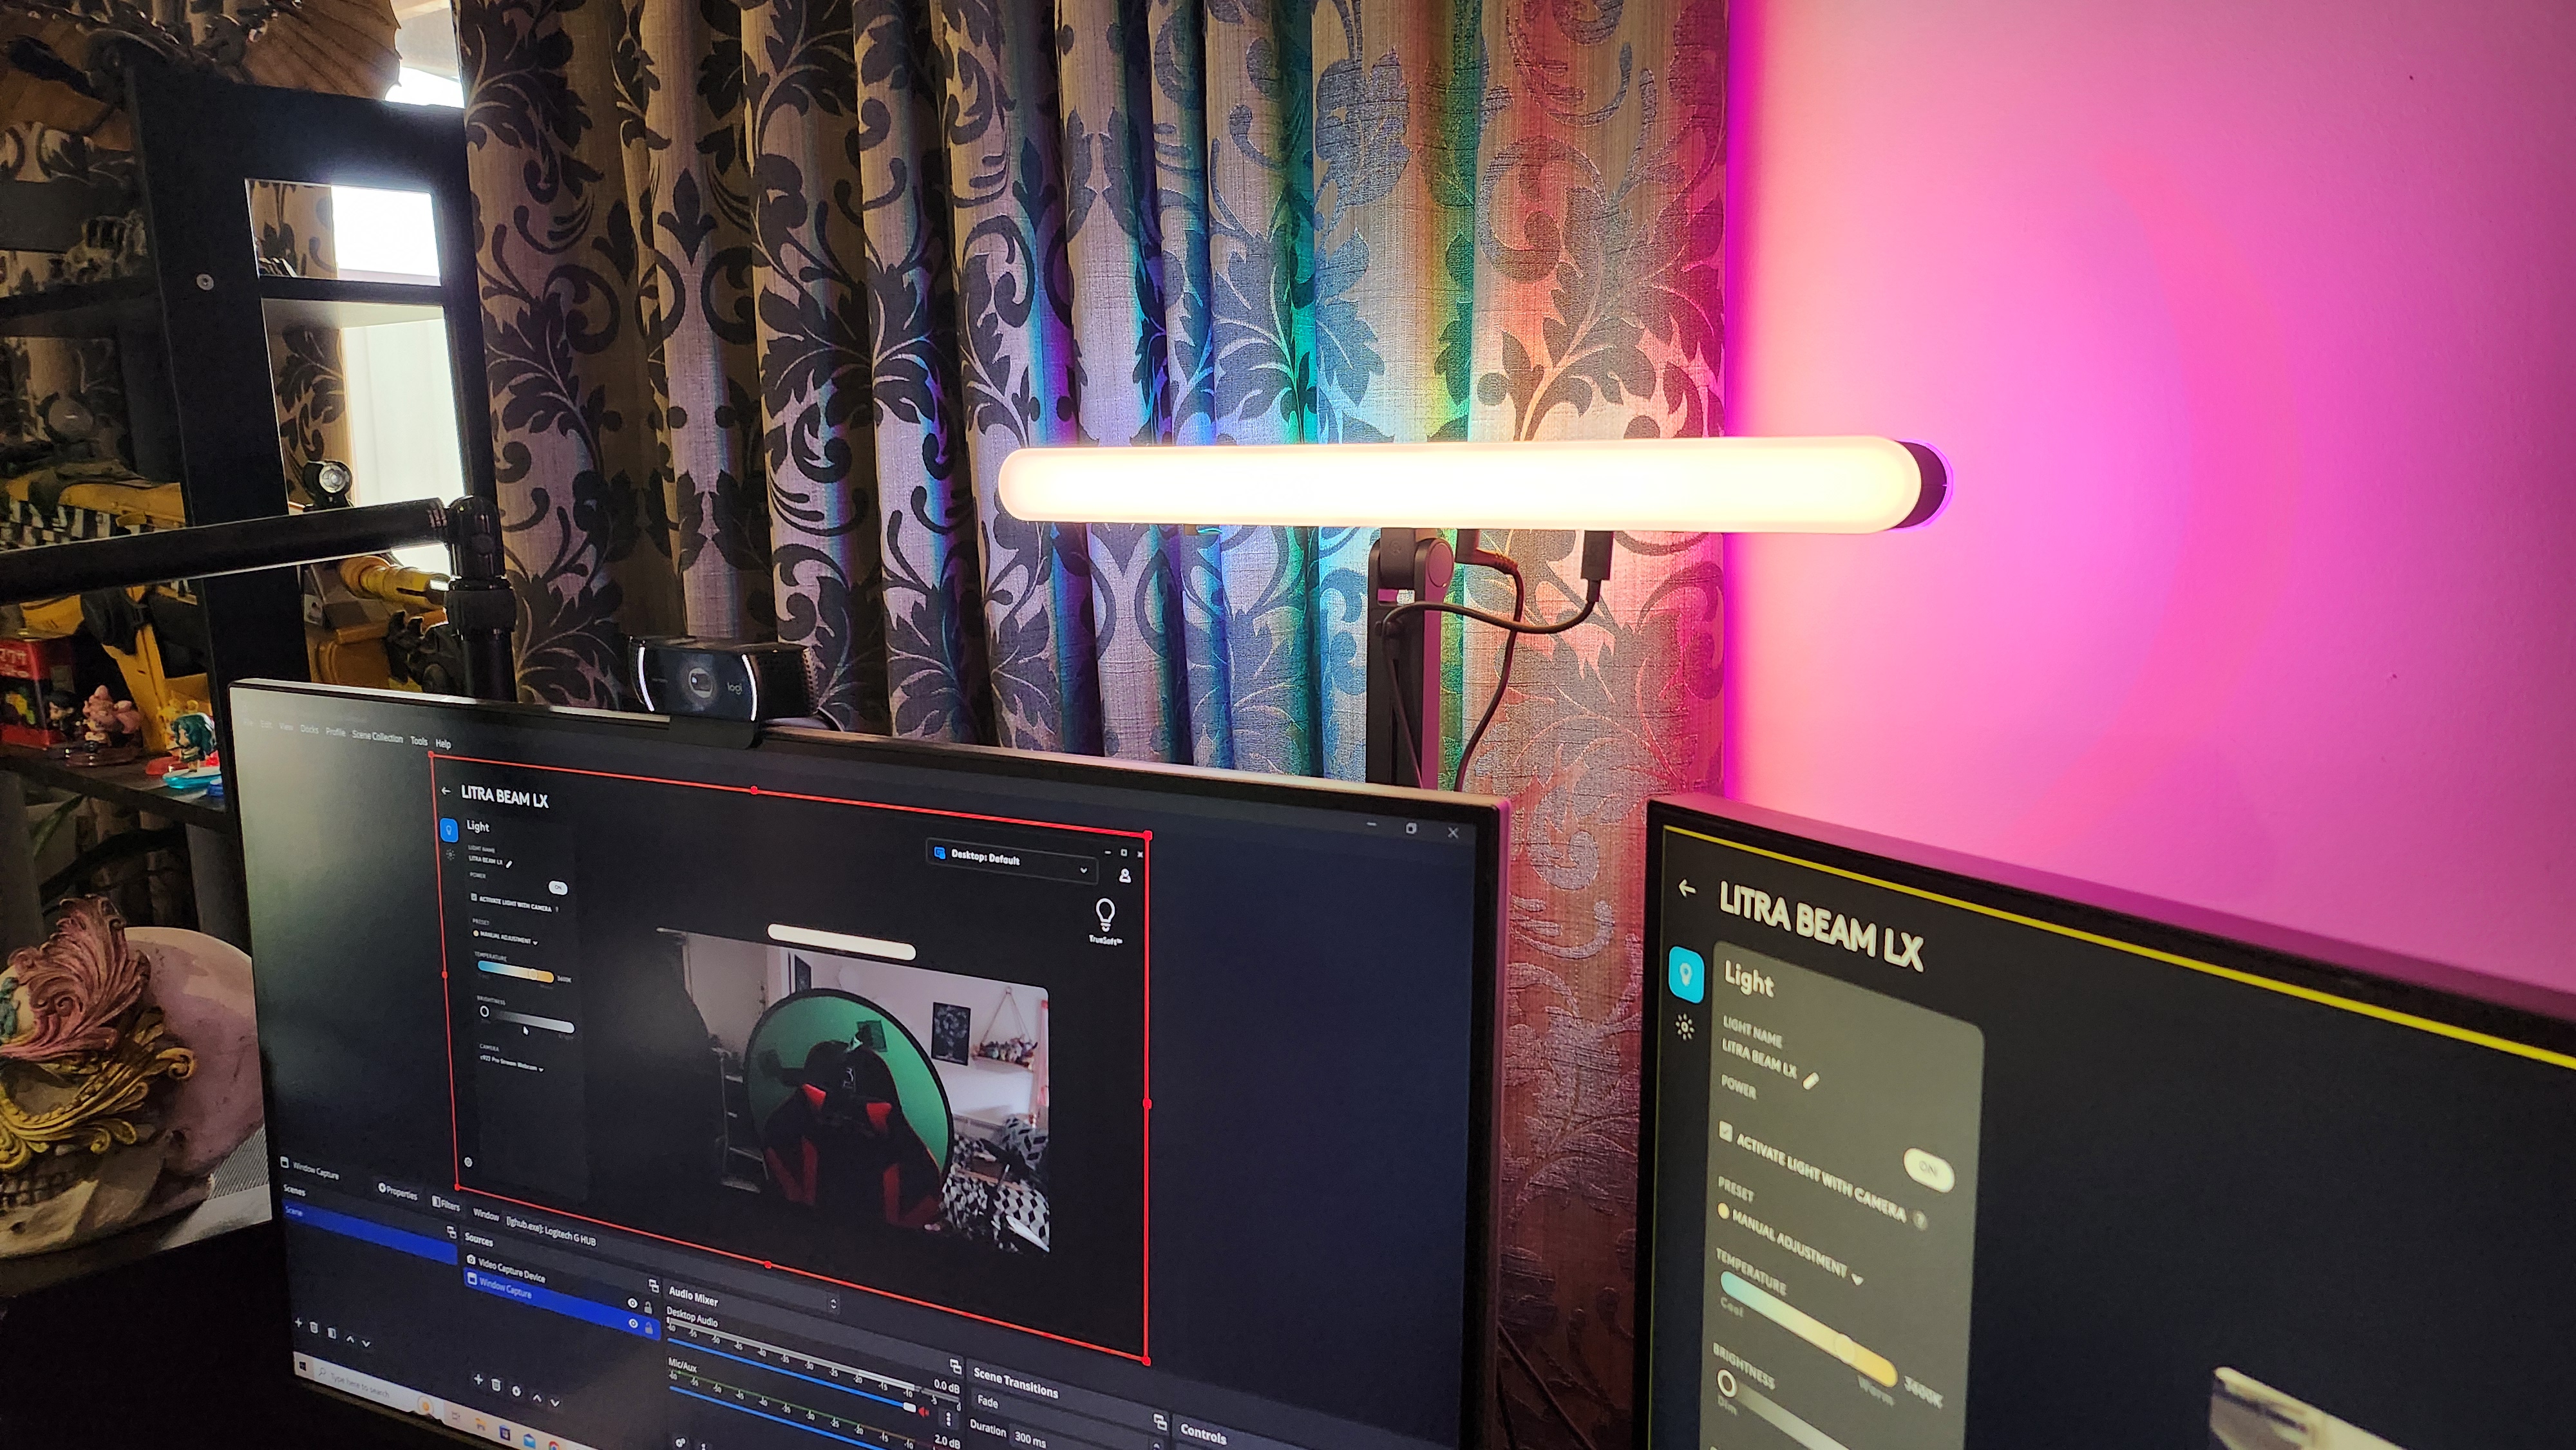 The Logitech Litra Beam LX key light set-up on a desk.